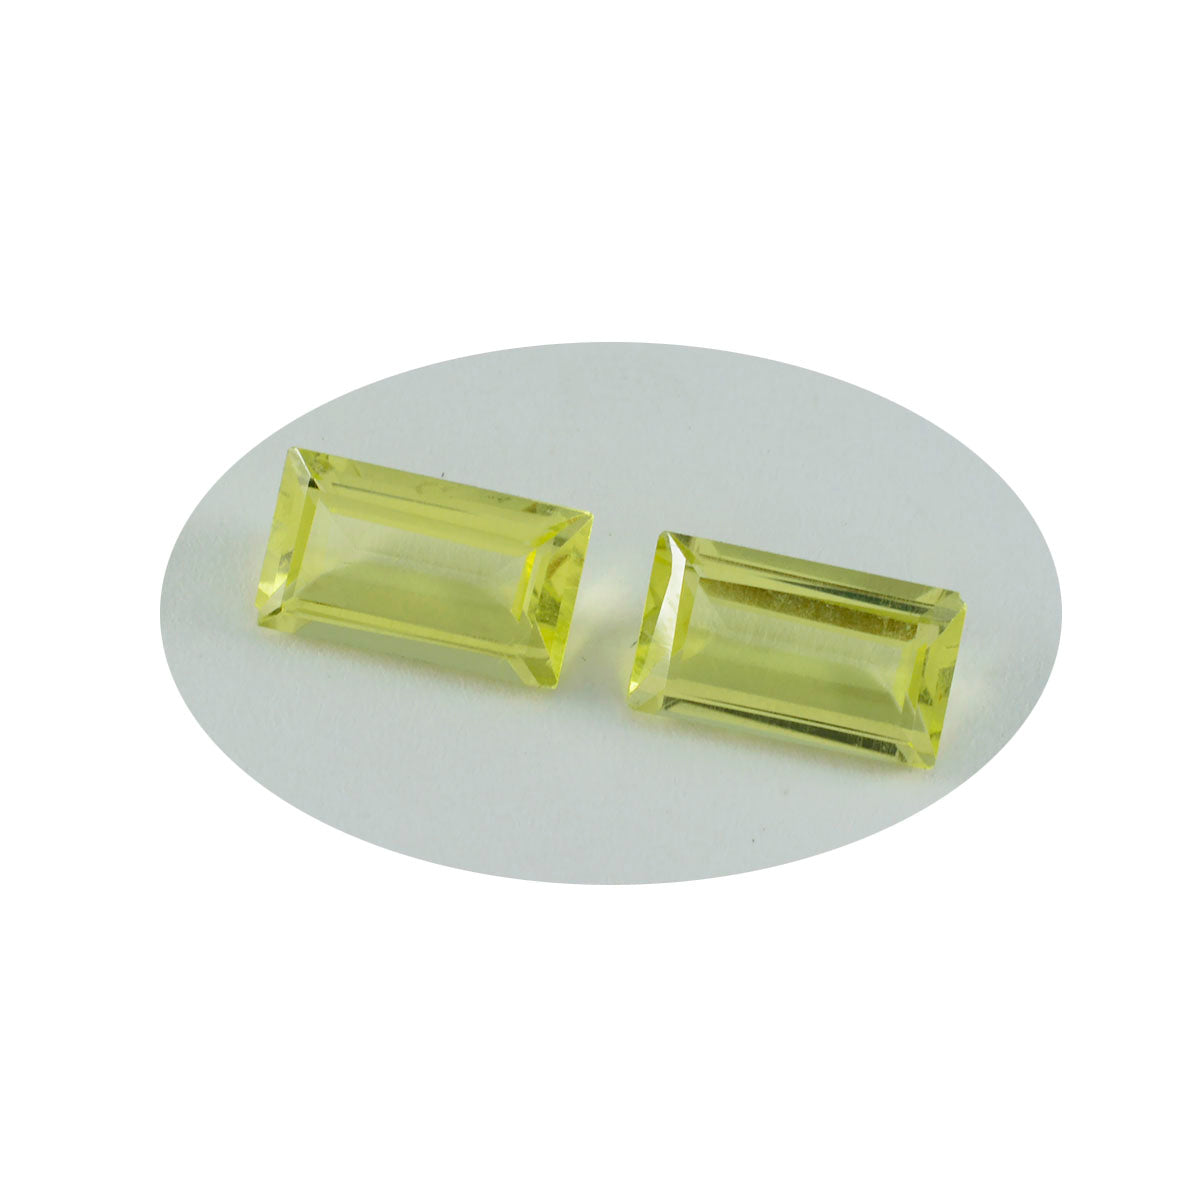 riyogems 1шт желтый лимонный кварц ограненный 9x18 мм форма багета превосходное качество россыпь драгоценных камней